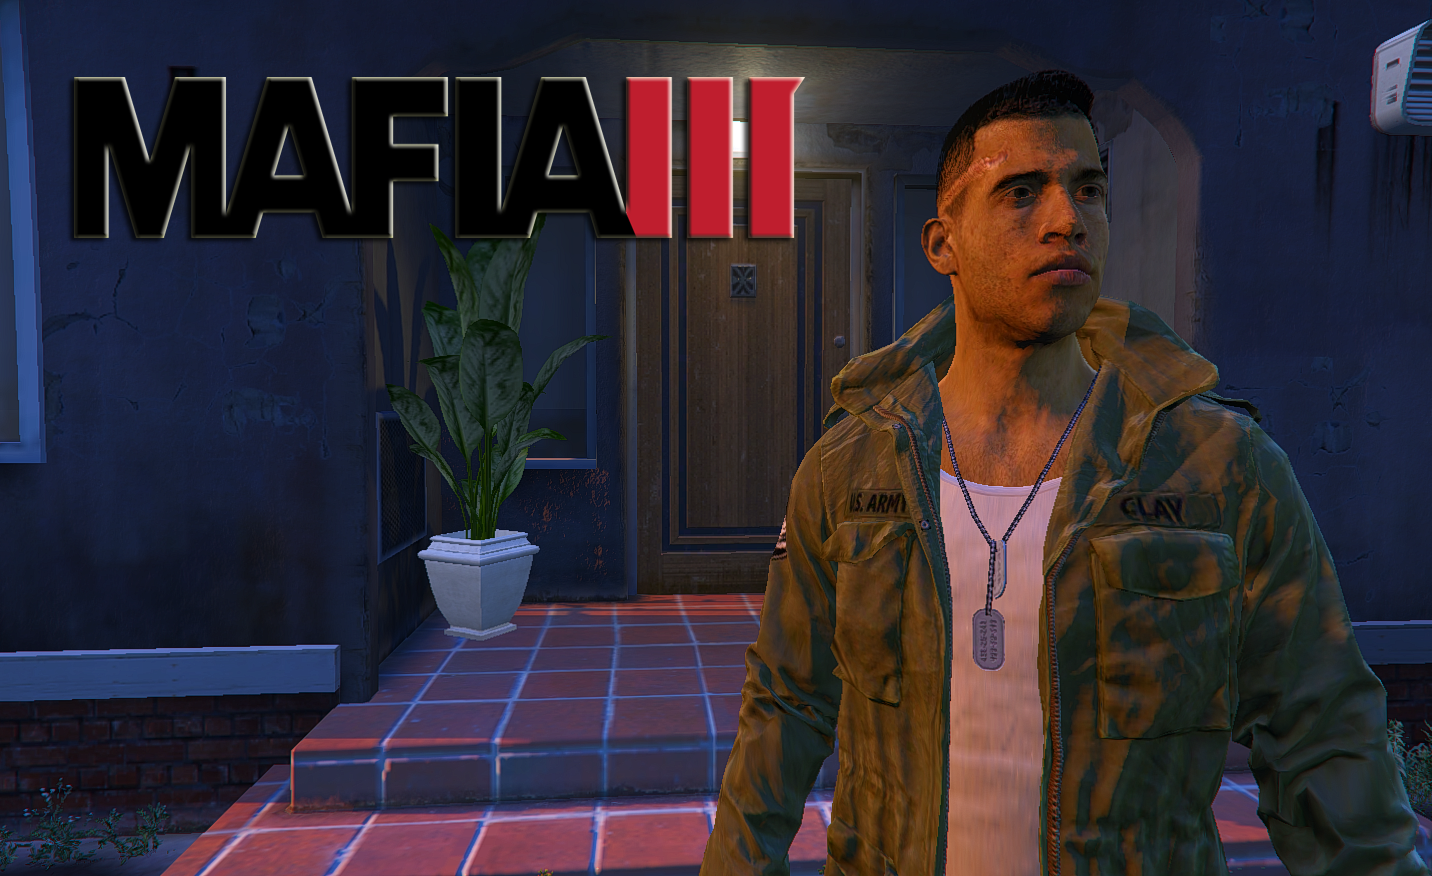 Mafia 3 - GTA V Killer?